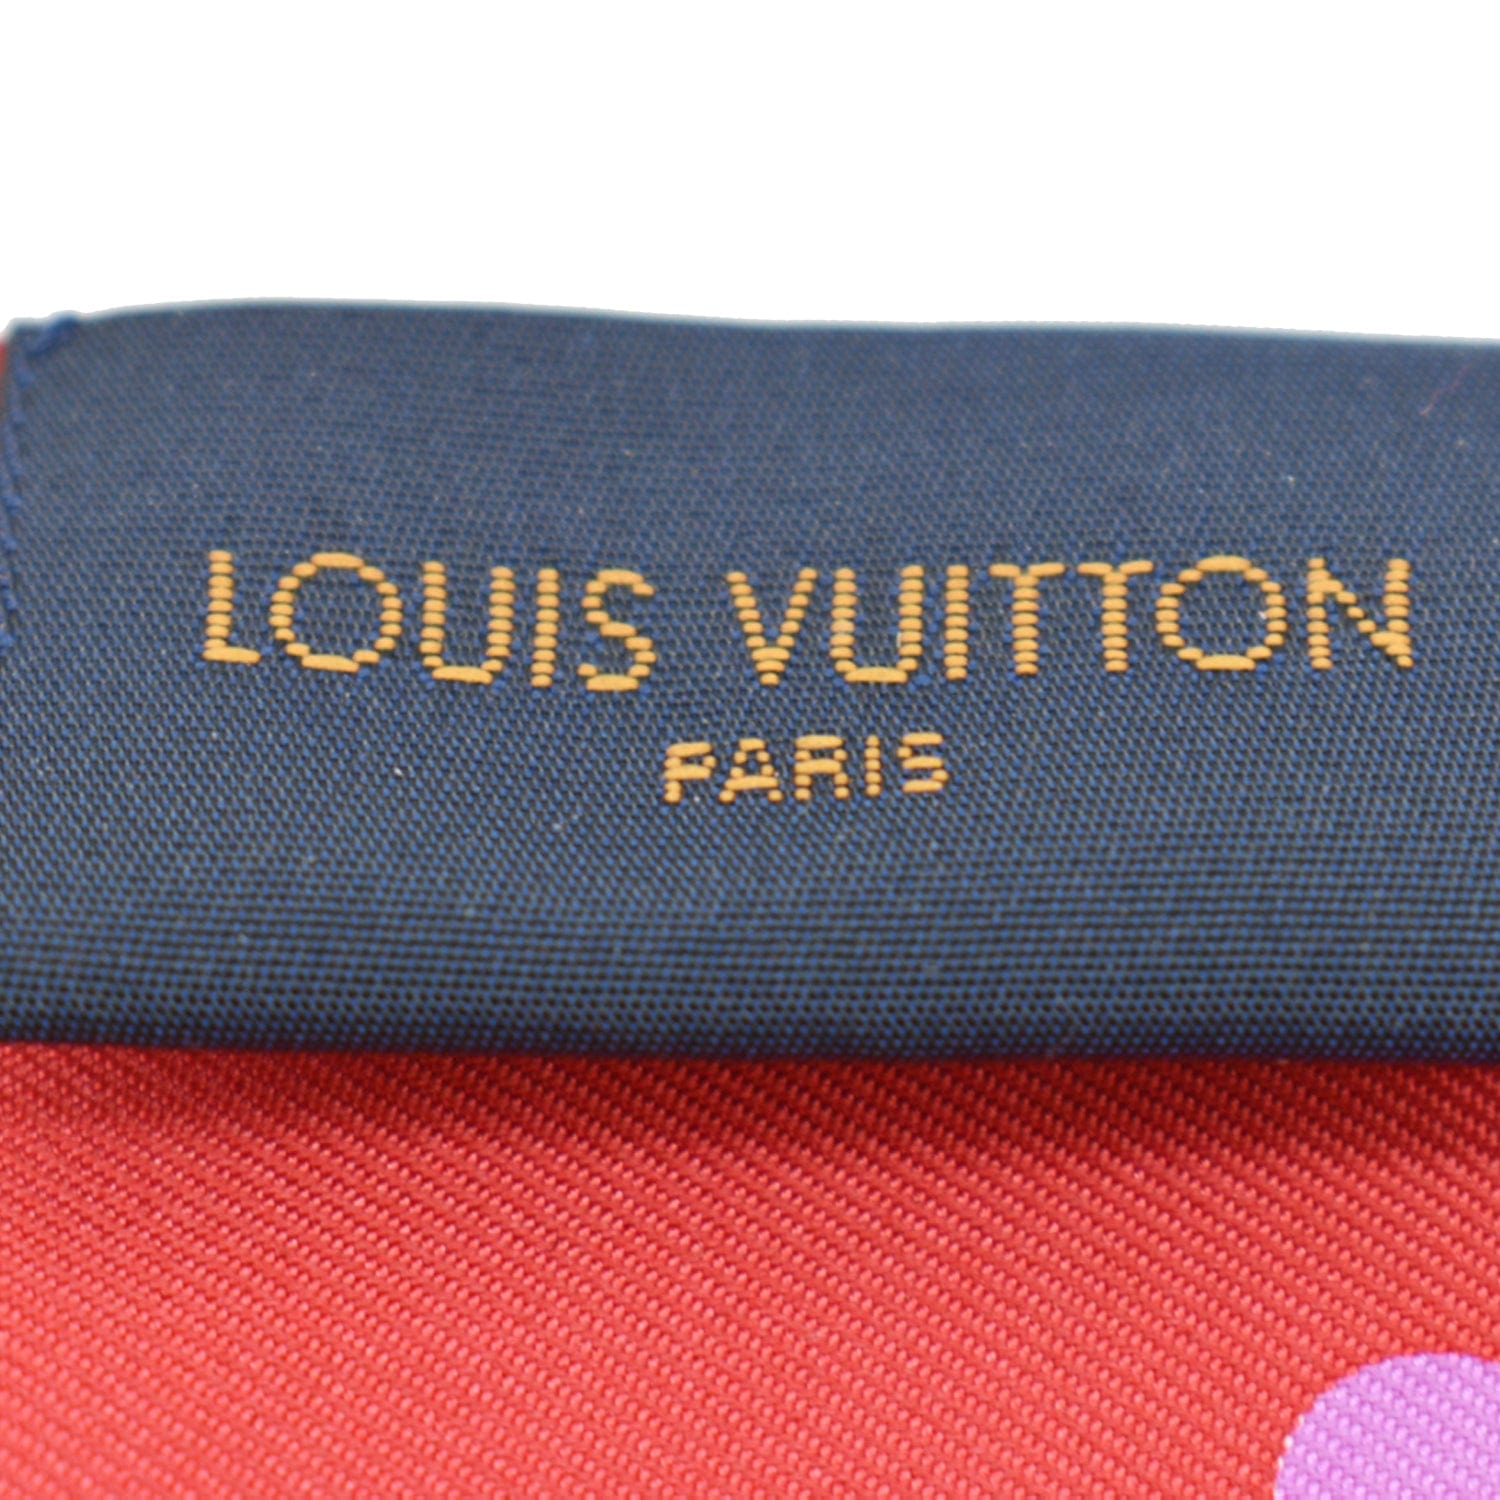 Louis Vuitton Pink/Purple Silk Monogram Confidential Bandeau